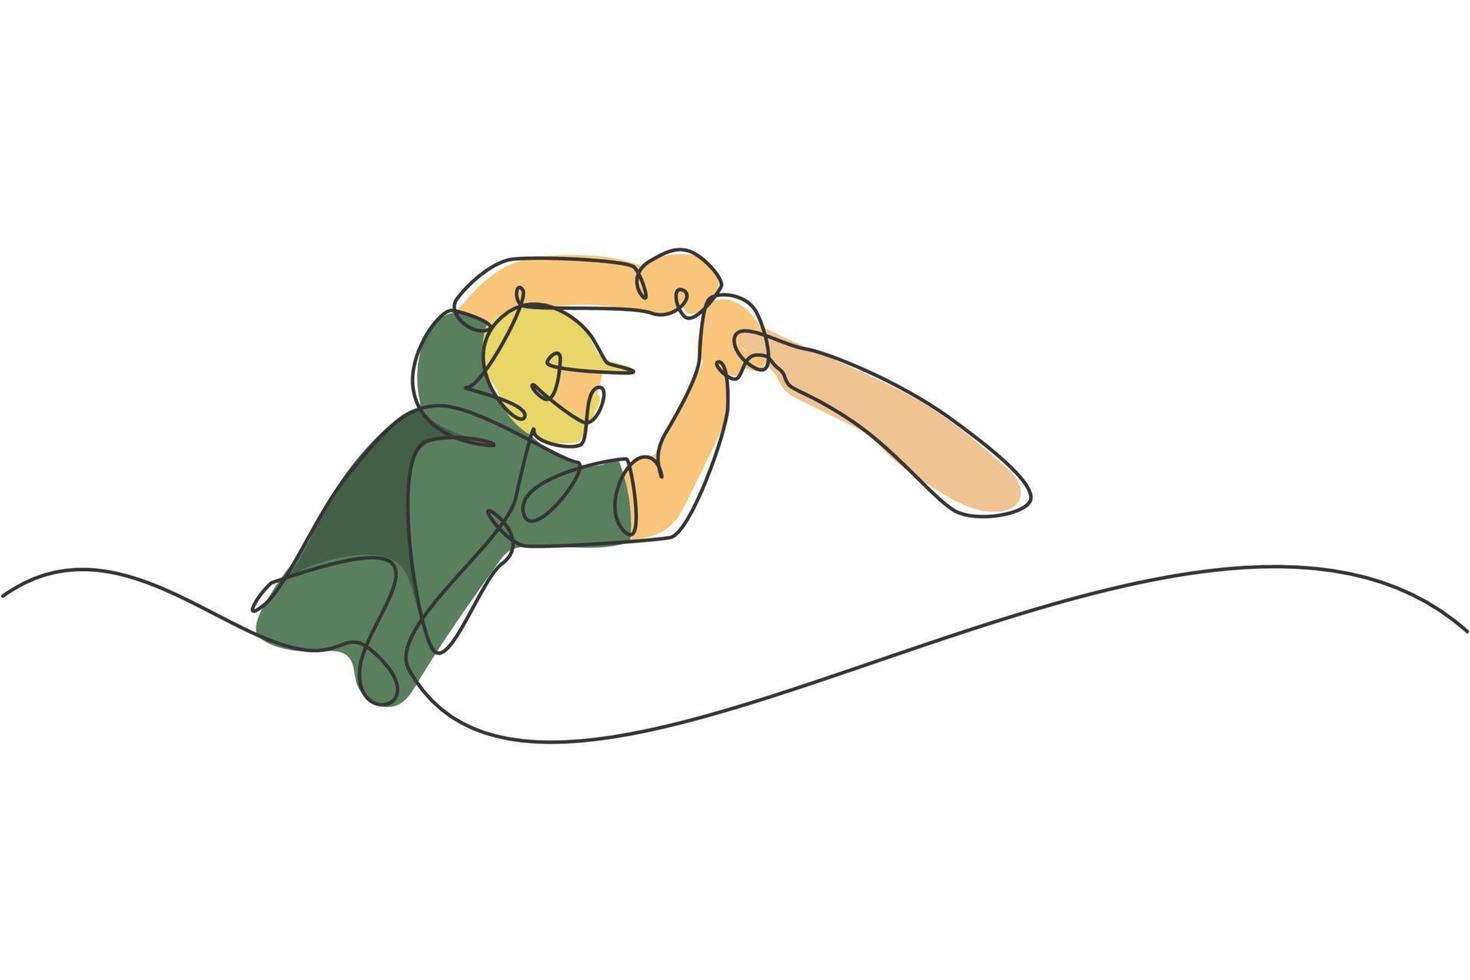 un disegno a linea singola della posizione del giovane giocatore di cricket energico per colpire l'illustrazione vettoriale della palla. concetto di sport competitivo. moderno disegno a linea continua per banner da competizione di cricket